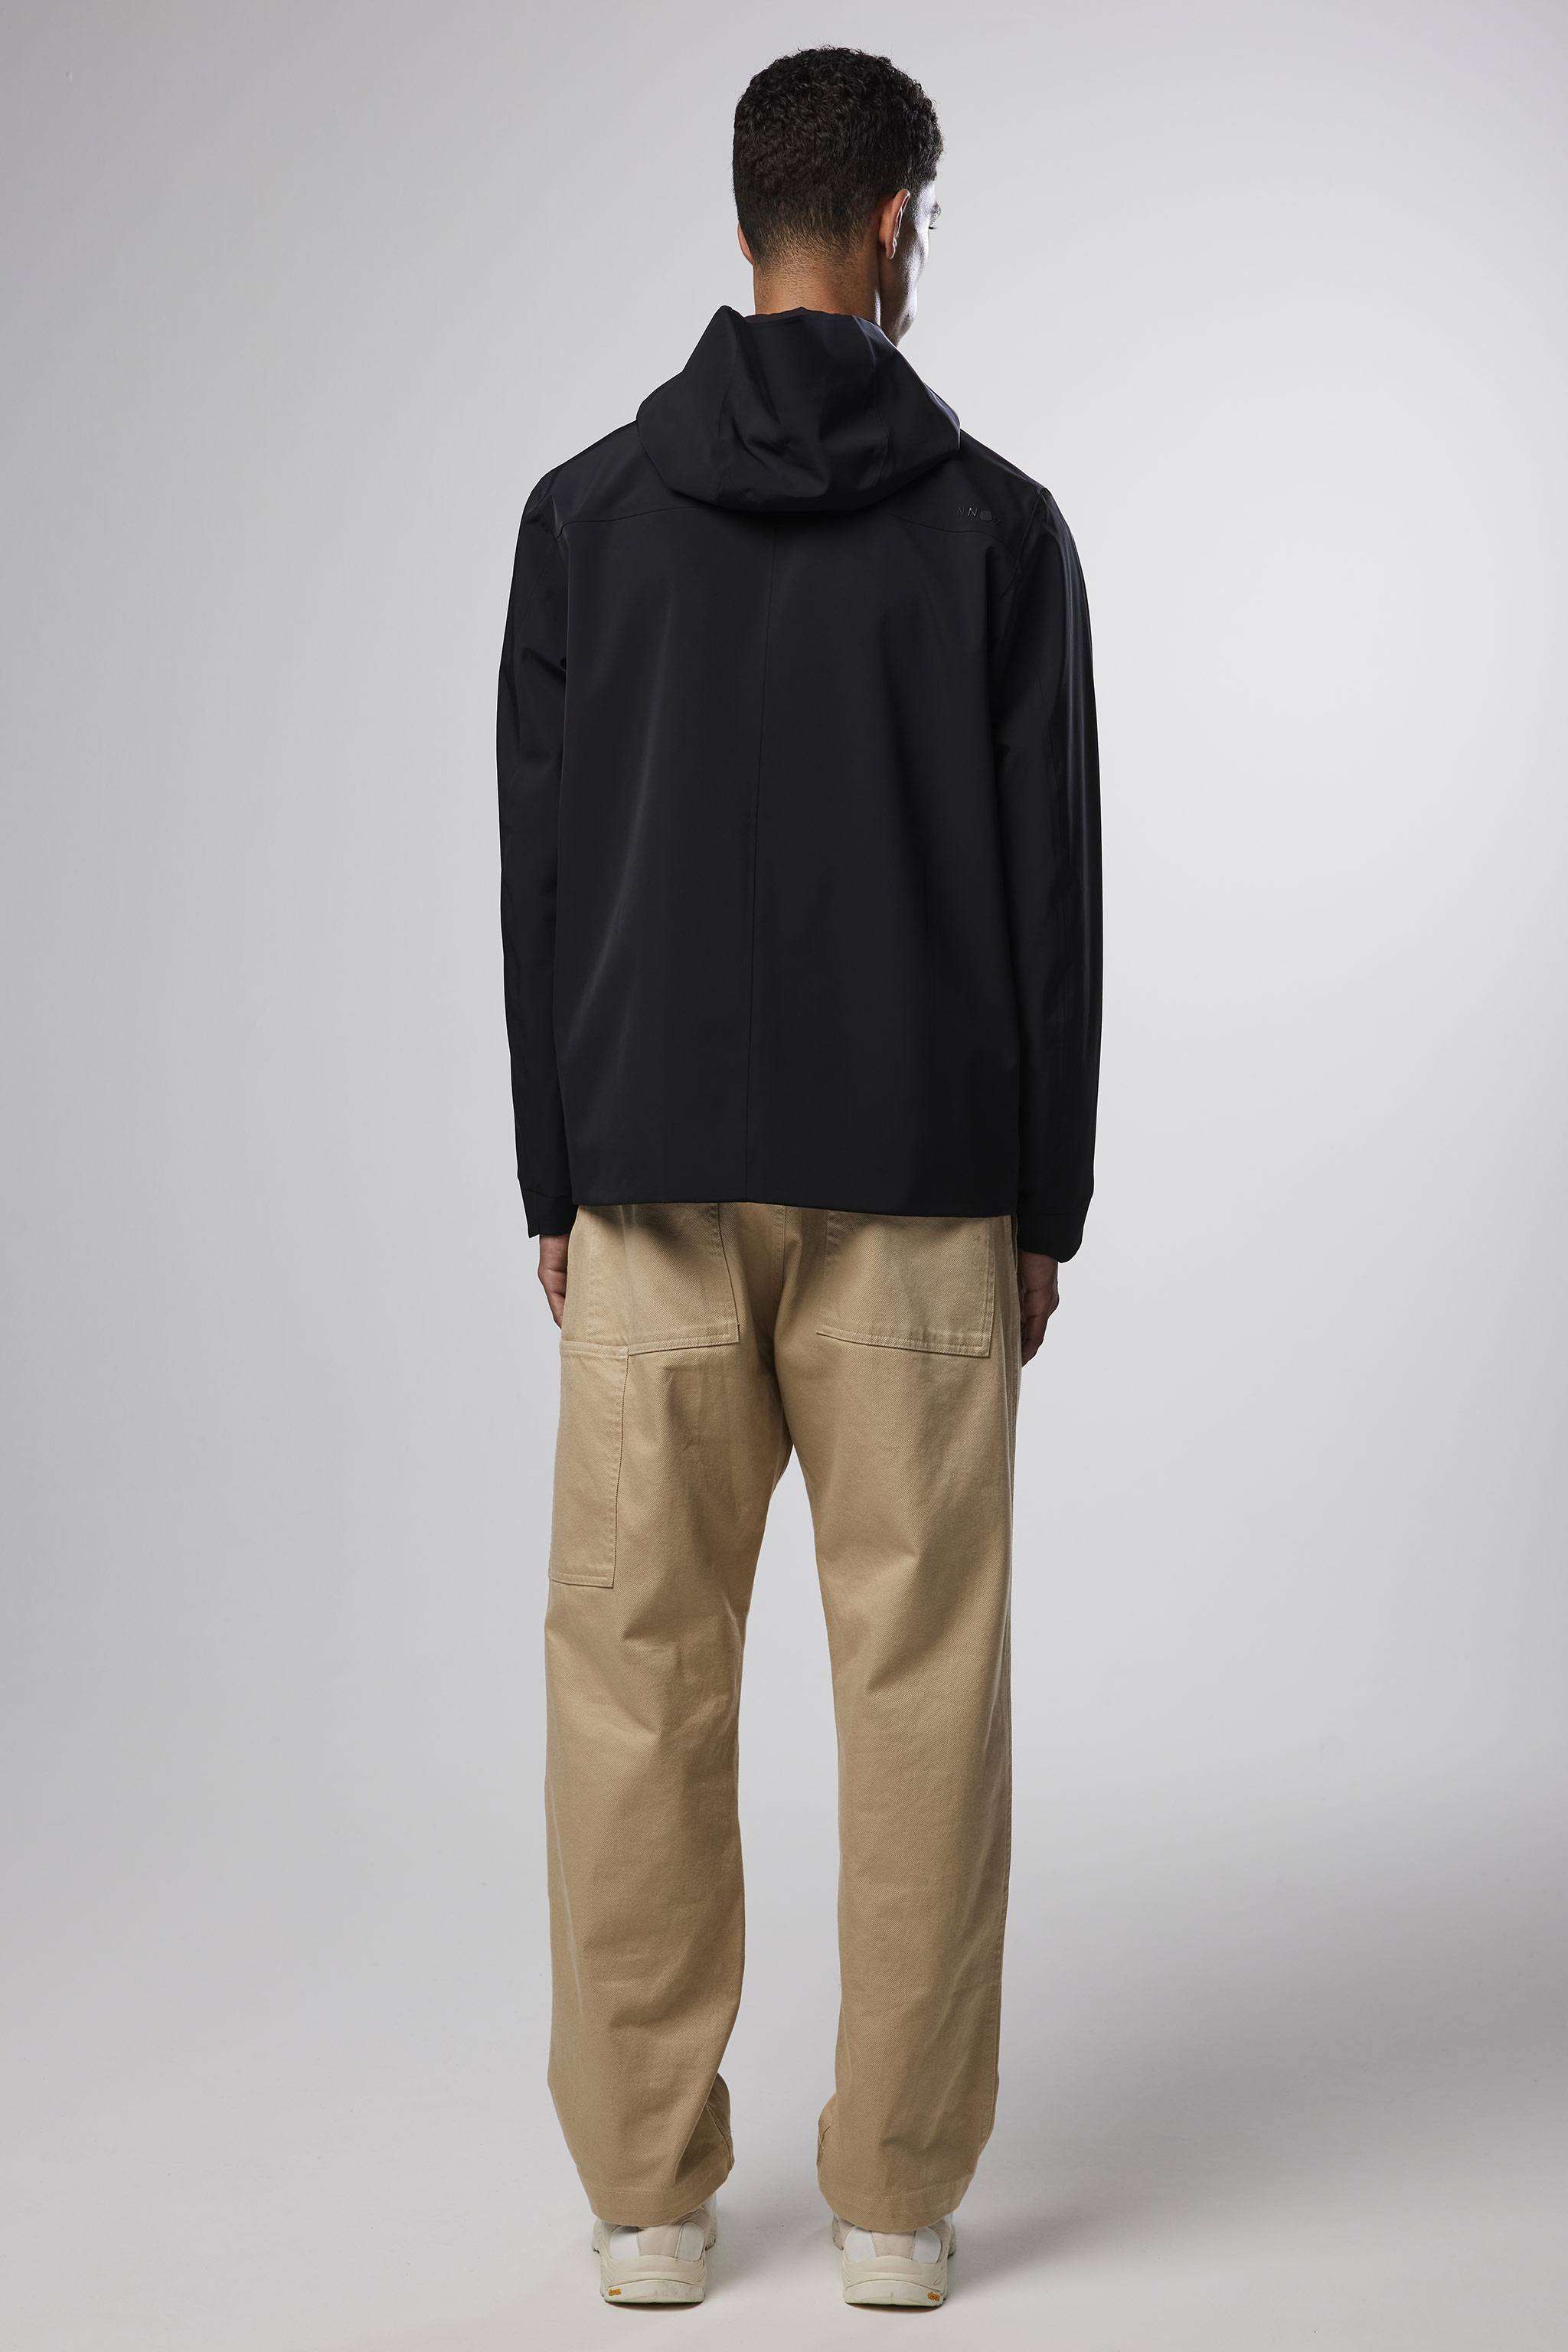 Beck 8240 men's jacket - Black - Buy online at NN.07®